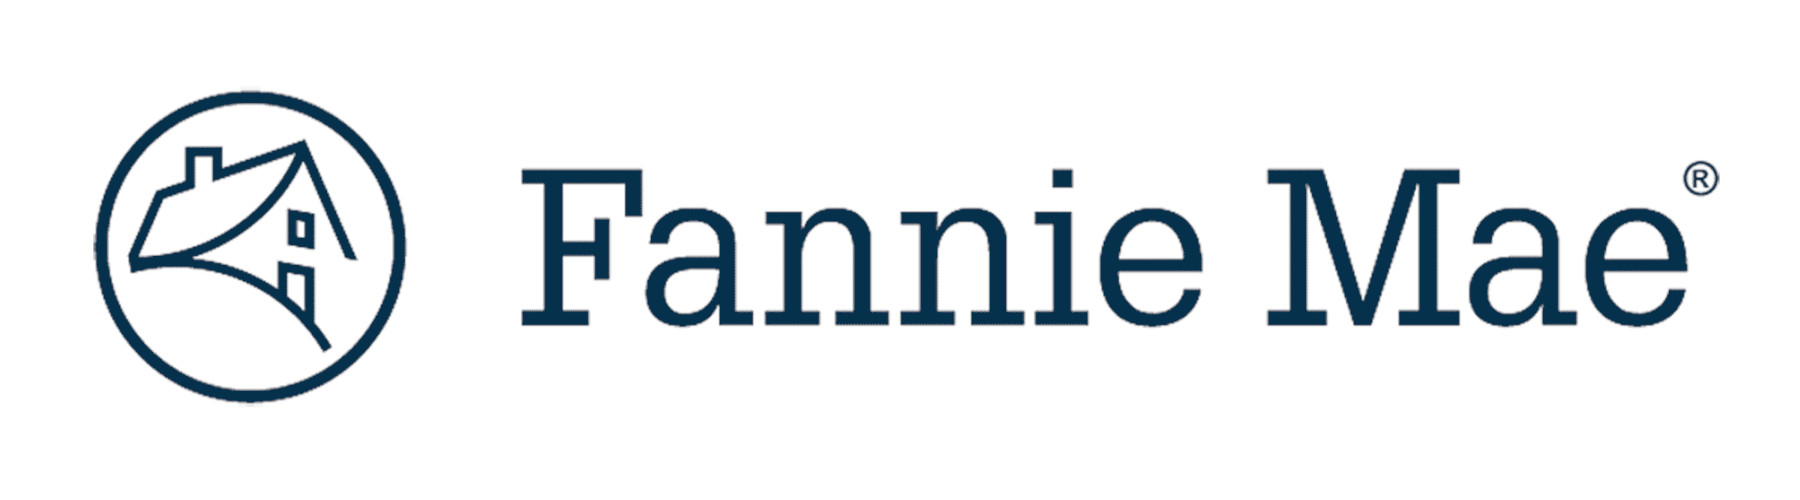 logo-fannie